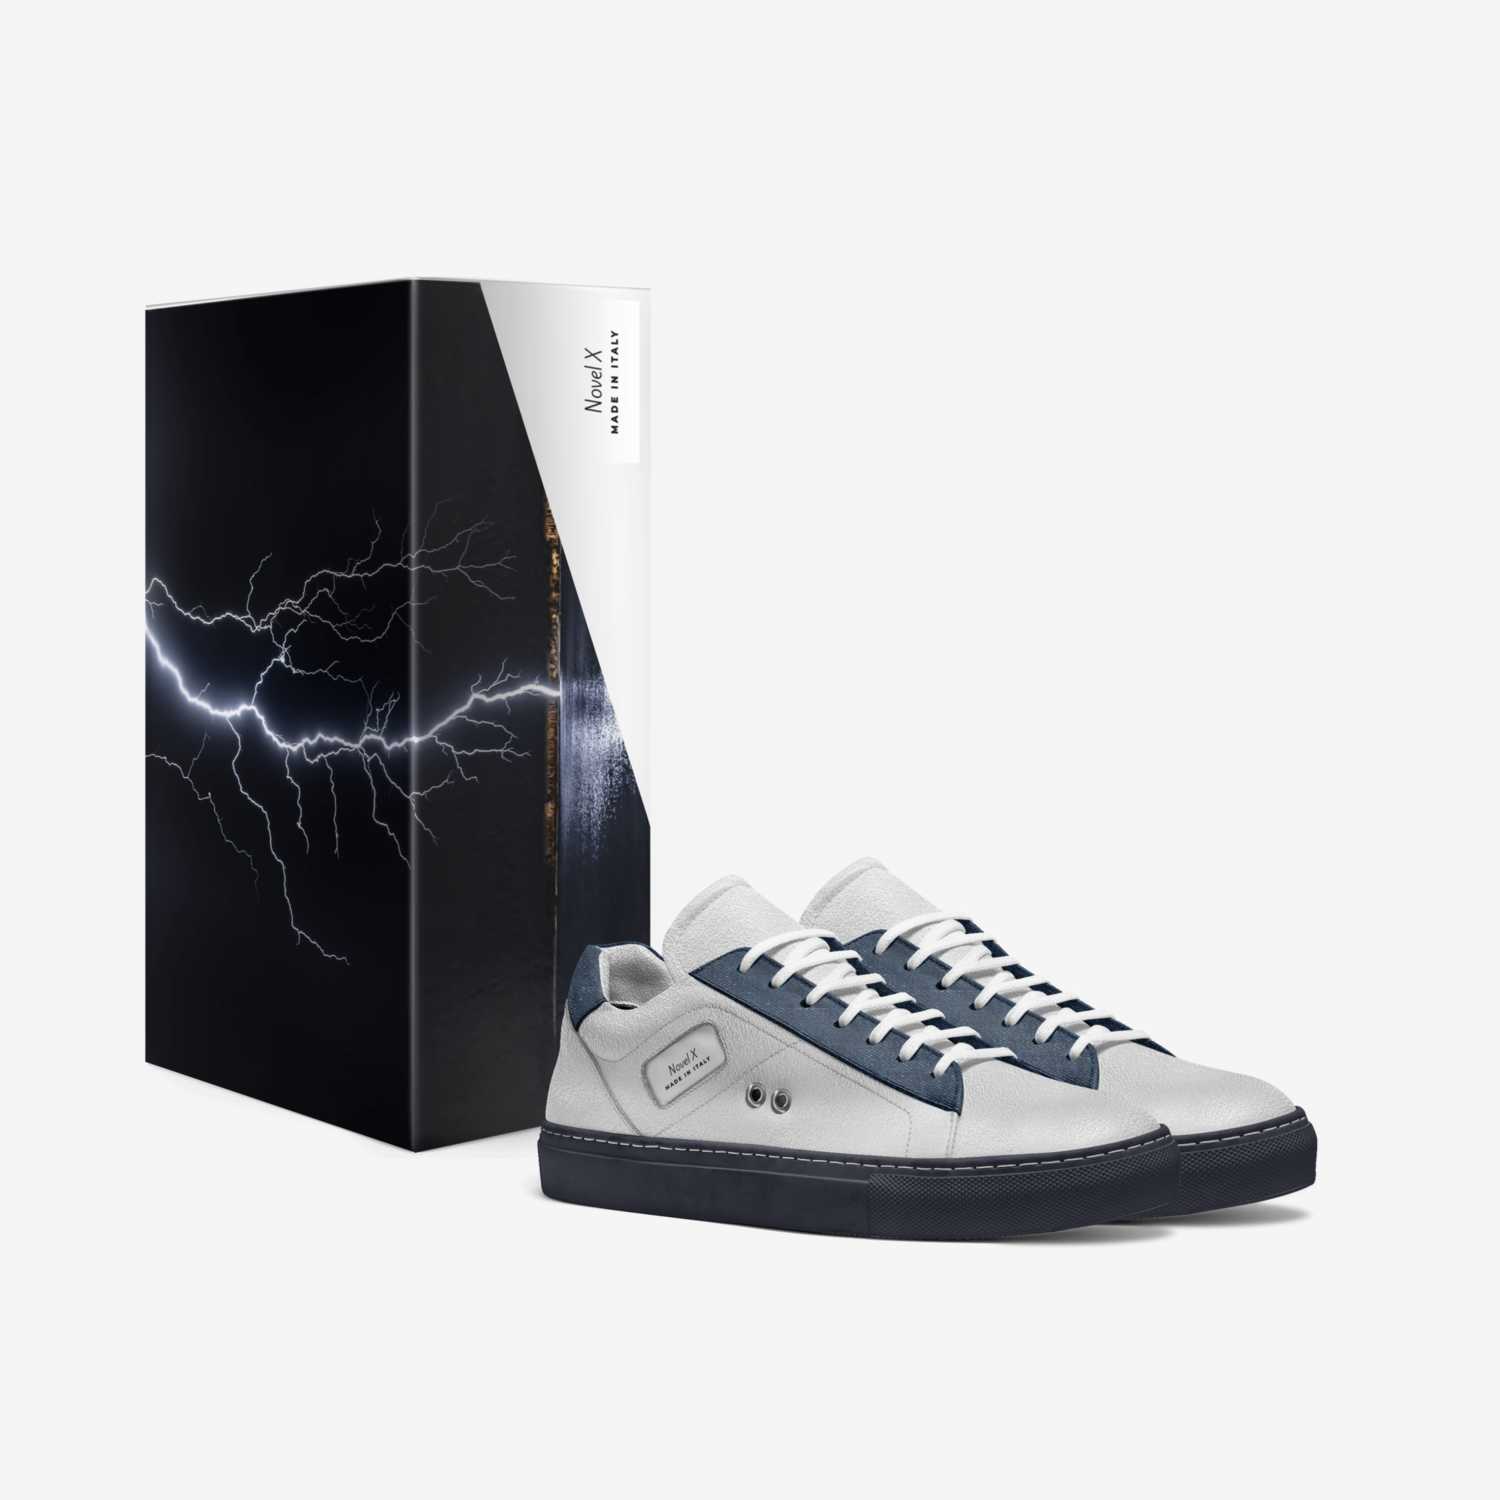 Novel X custom made in Italy shoes by Tayo Omolola | Box view